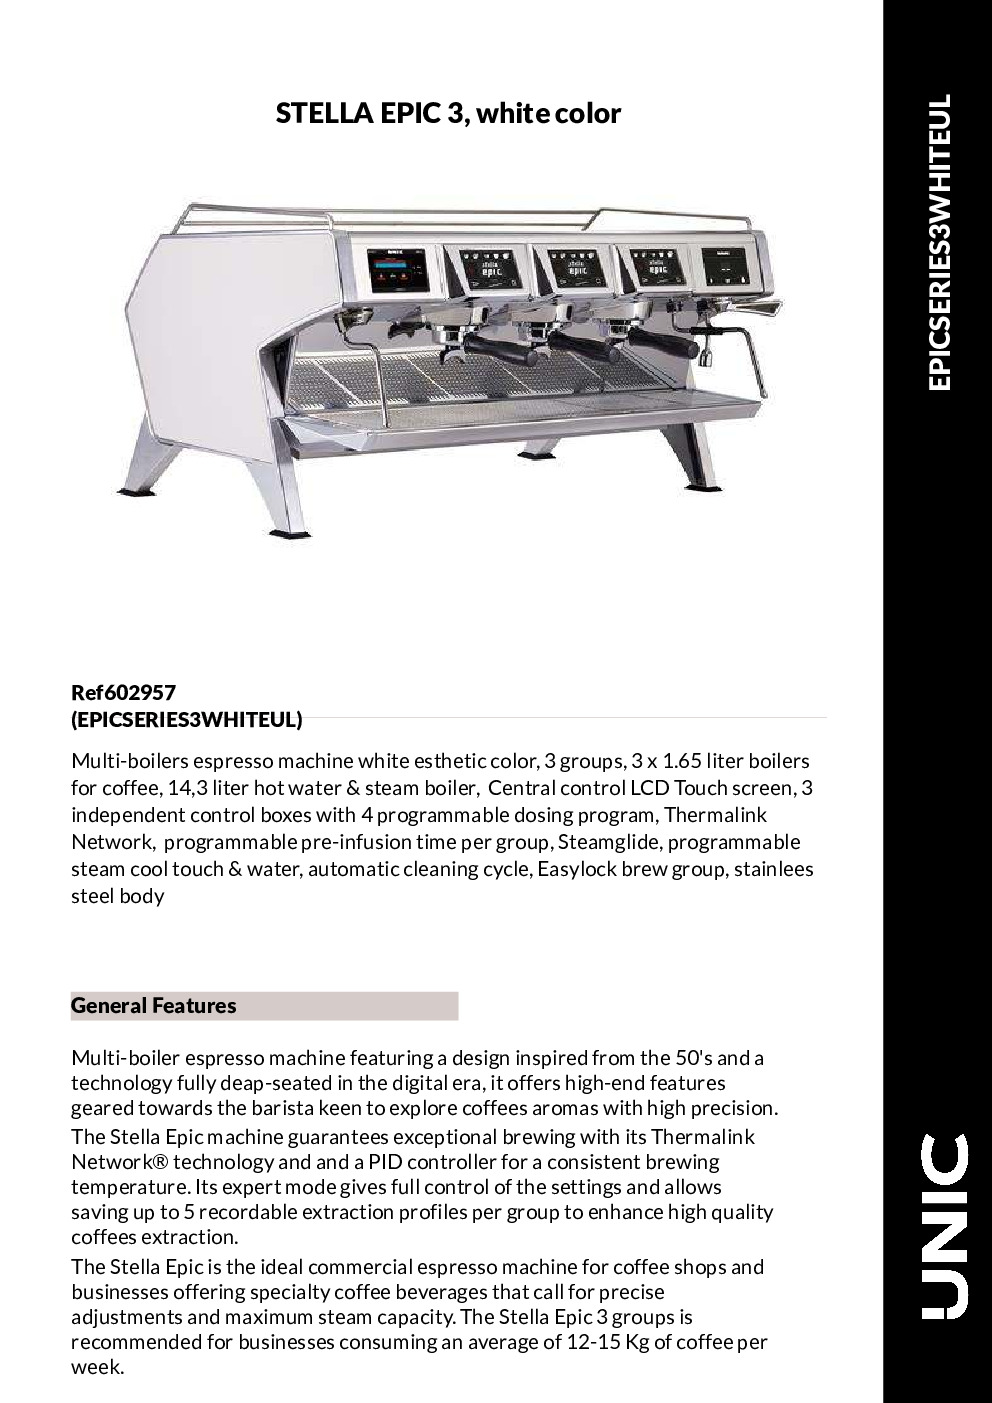 Grindmaster-UNIC-Crathco EPIC 3 WHITE Espresso Cappuccino Machine